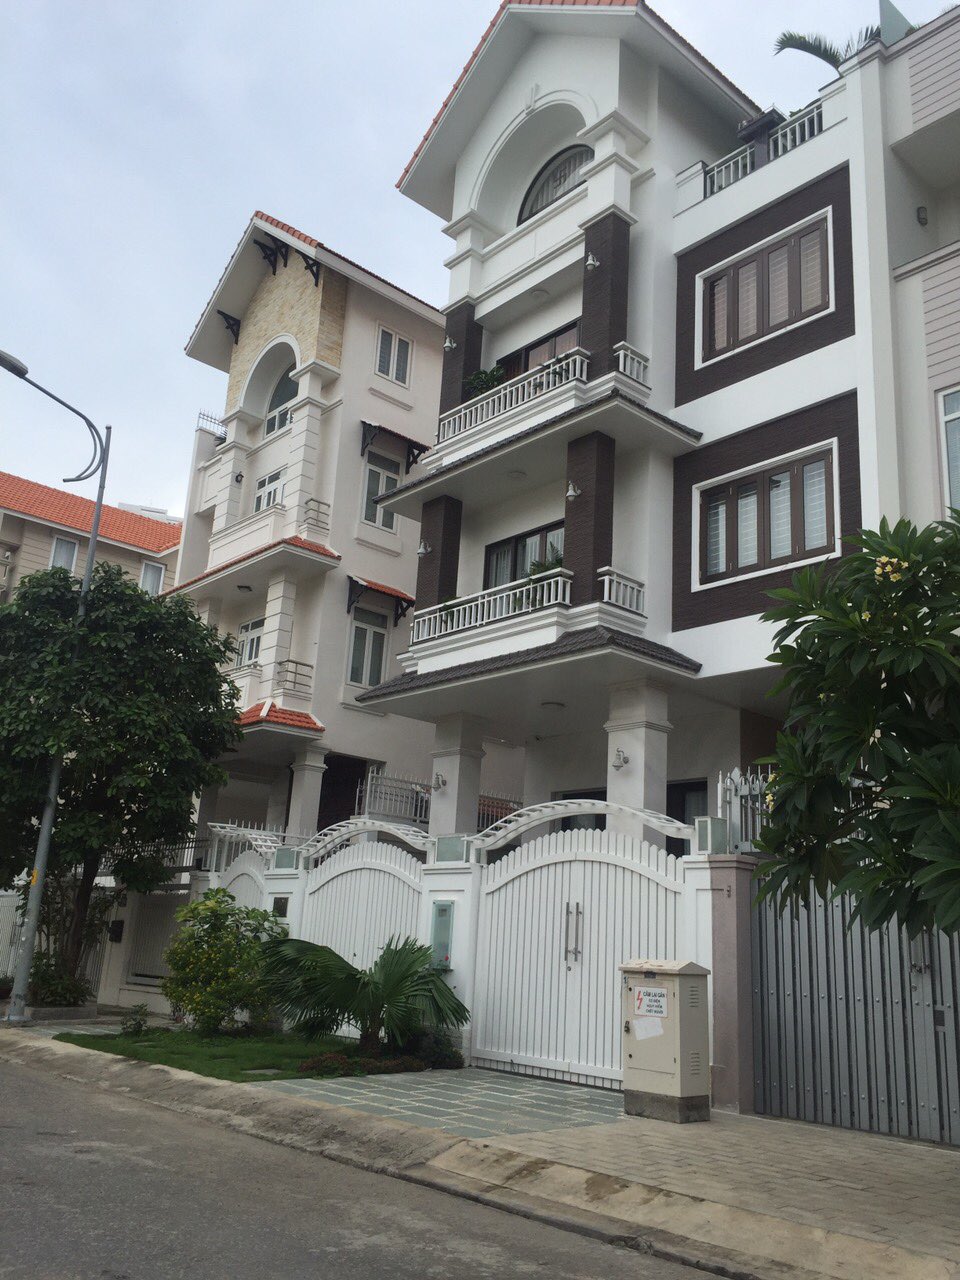  Bán gấp biệt thự KDC Him Lam Kênh Tẻ Quận 7 DT 10x20 có thang máy, sổ hồng giá 39 tỷ rẻ nhất thị trường